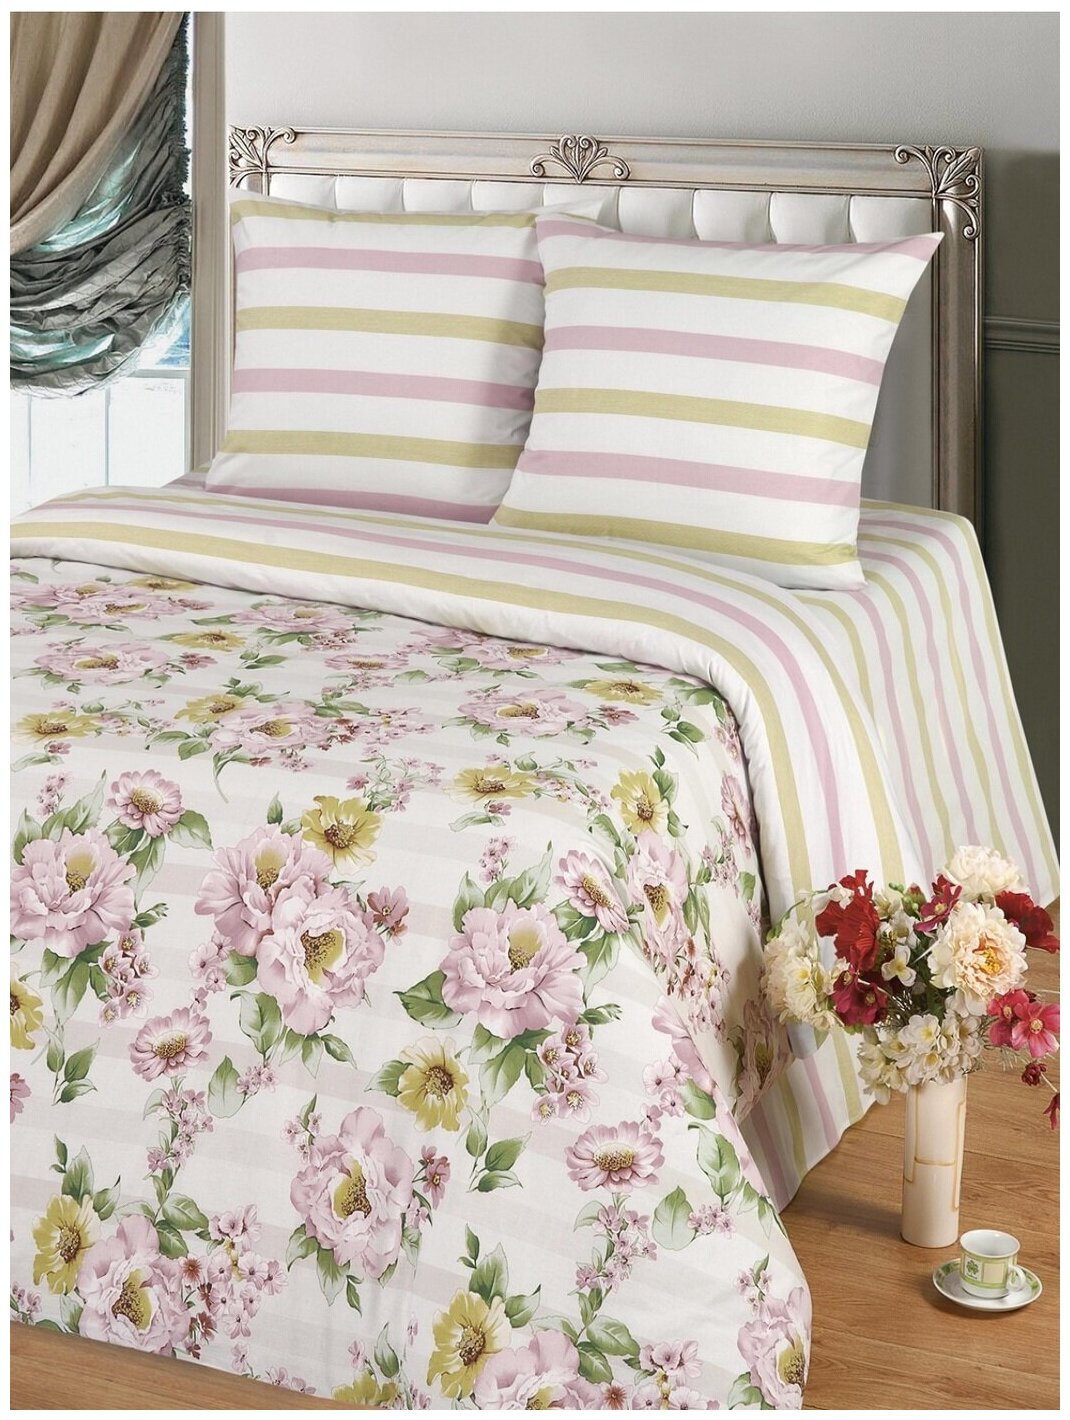 Постельное белье 1,5 спальное Mary Home Вивьен, поплин, пододеяльник на молнии, 2 наволочки 70х70, розово-белое